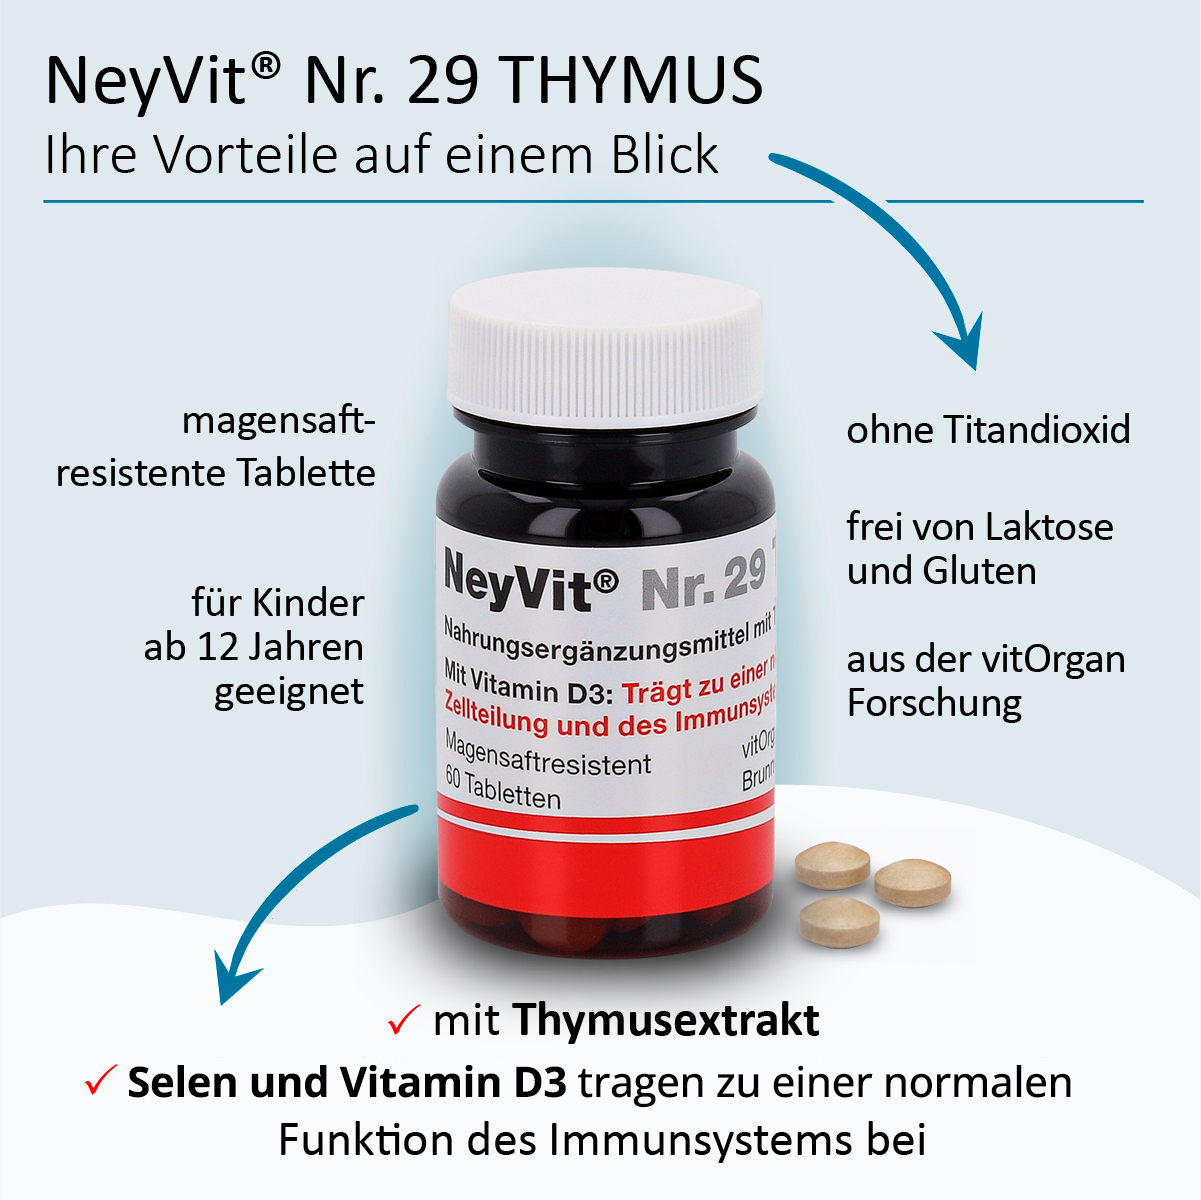 NeyVit® Nr. 29 Thymus